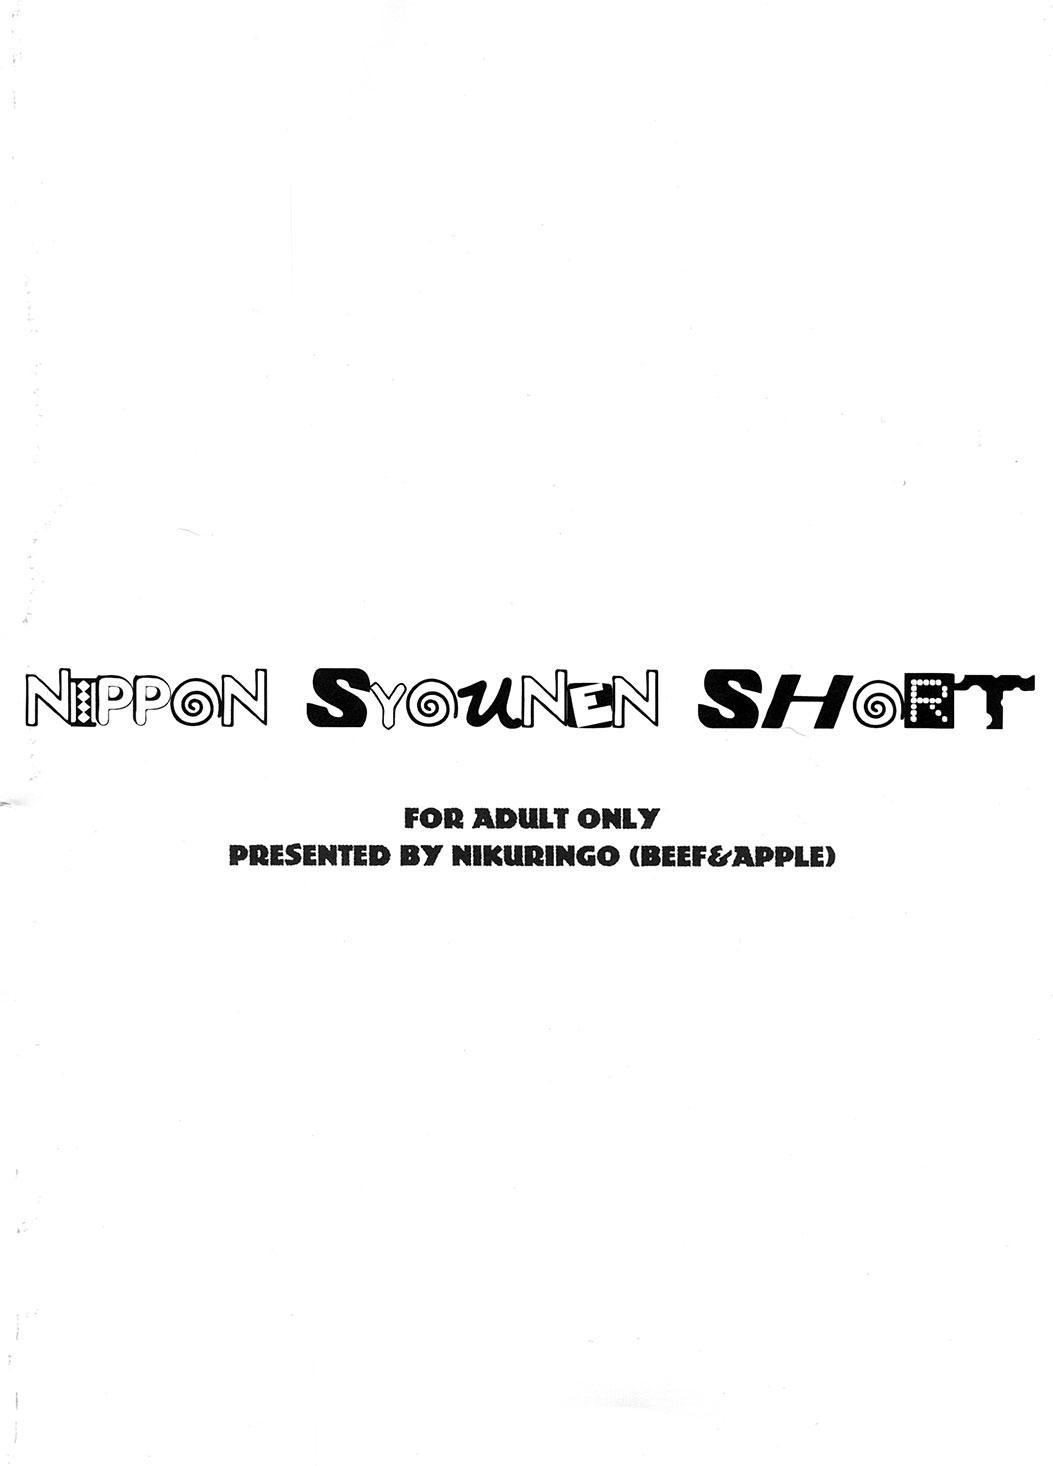 Nippon Syounen Short 25